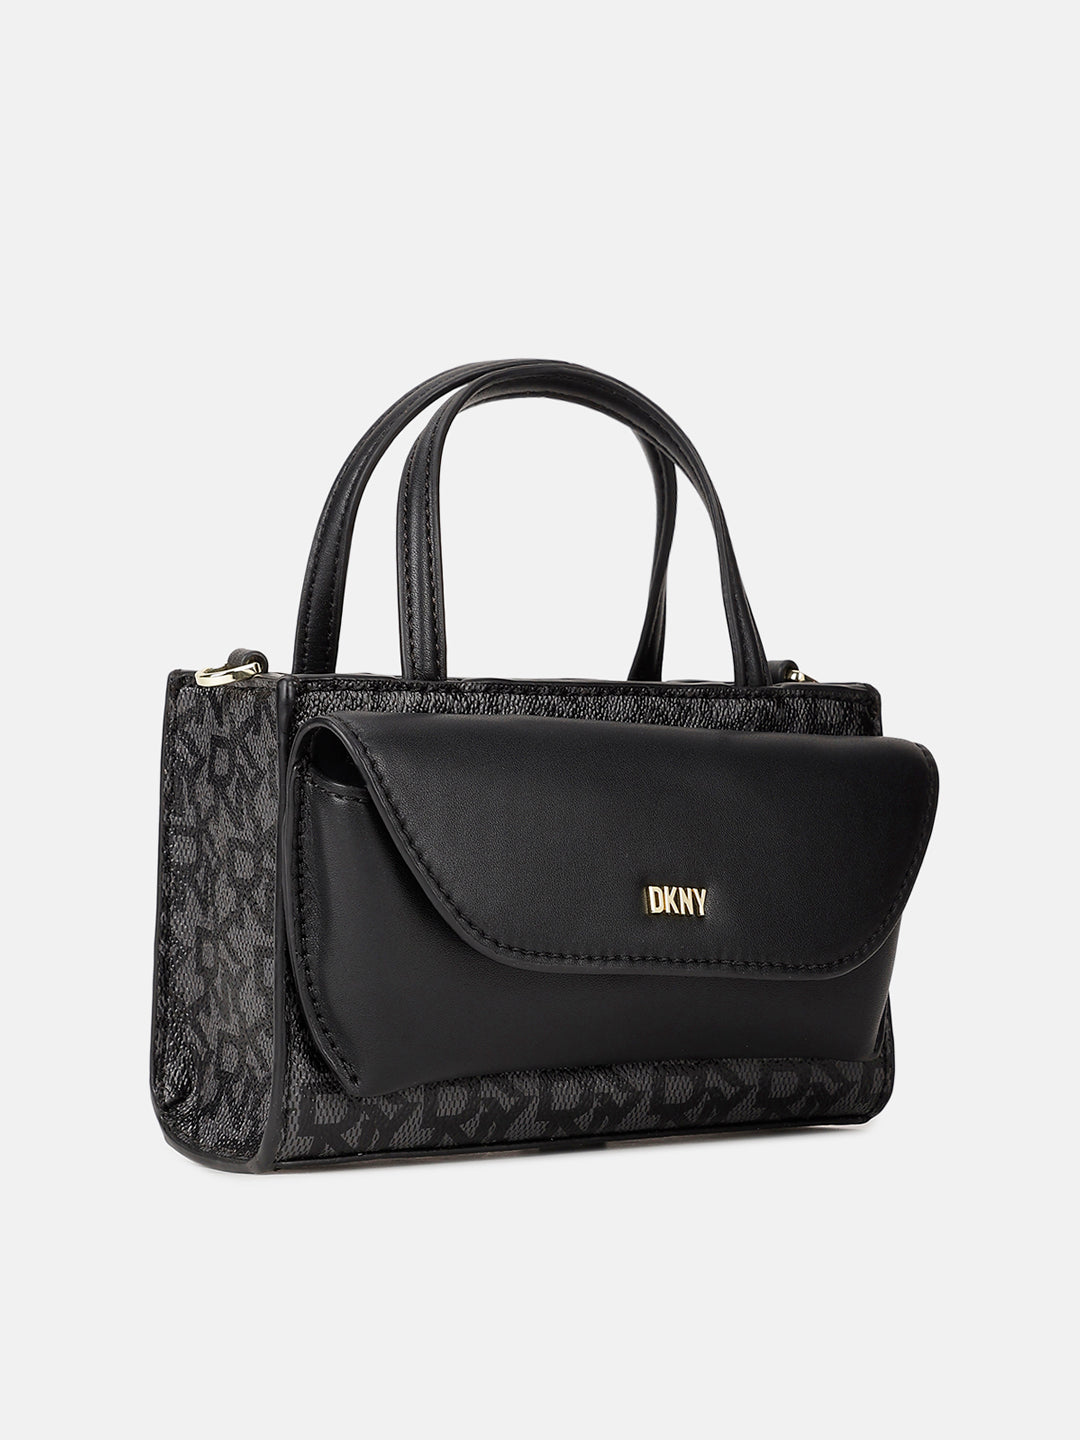 DKNY Bags Suri Flap Shoulder - Handbags - Boozt.com